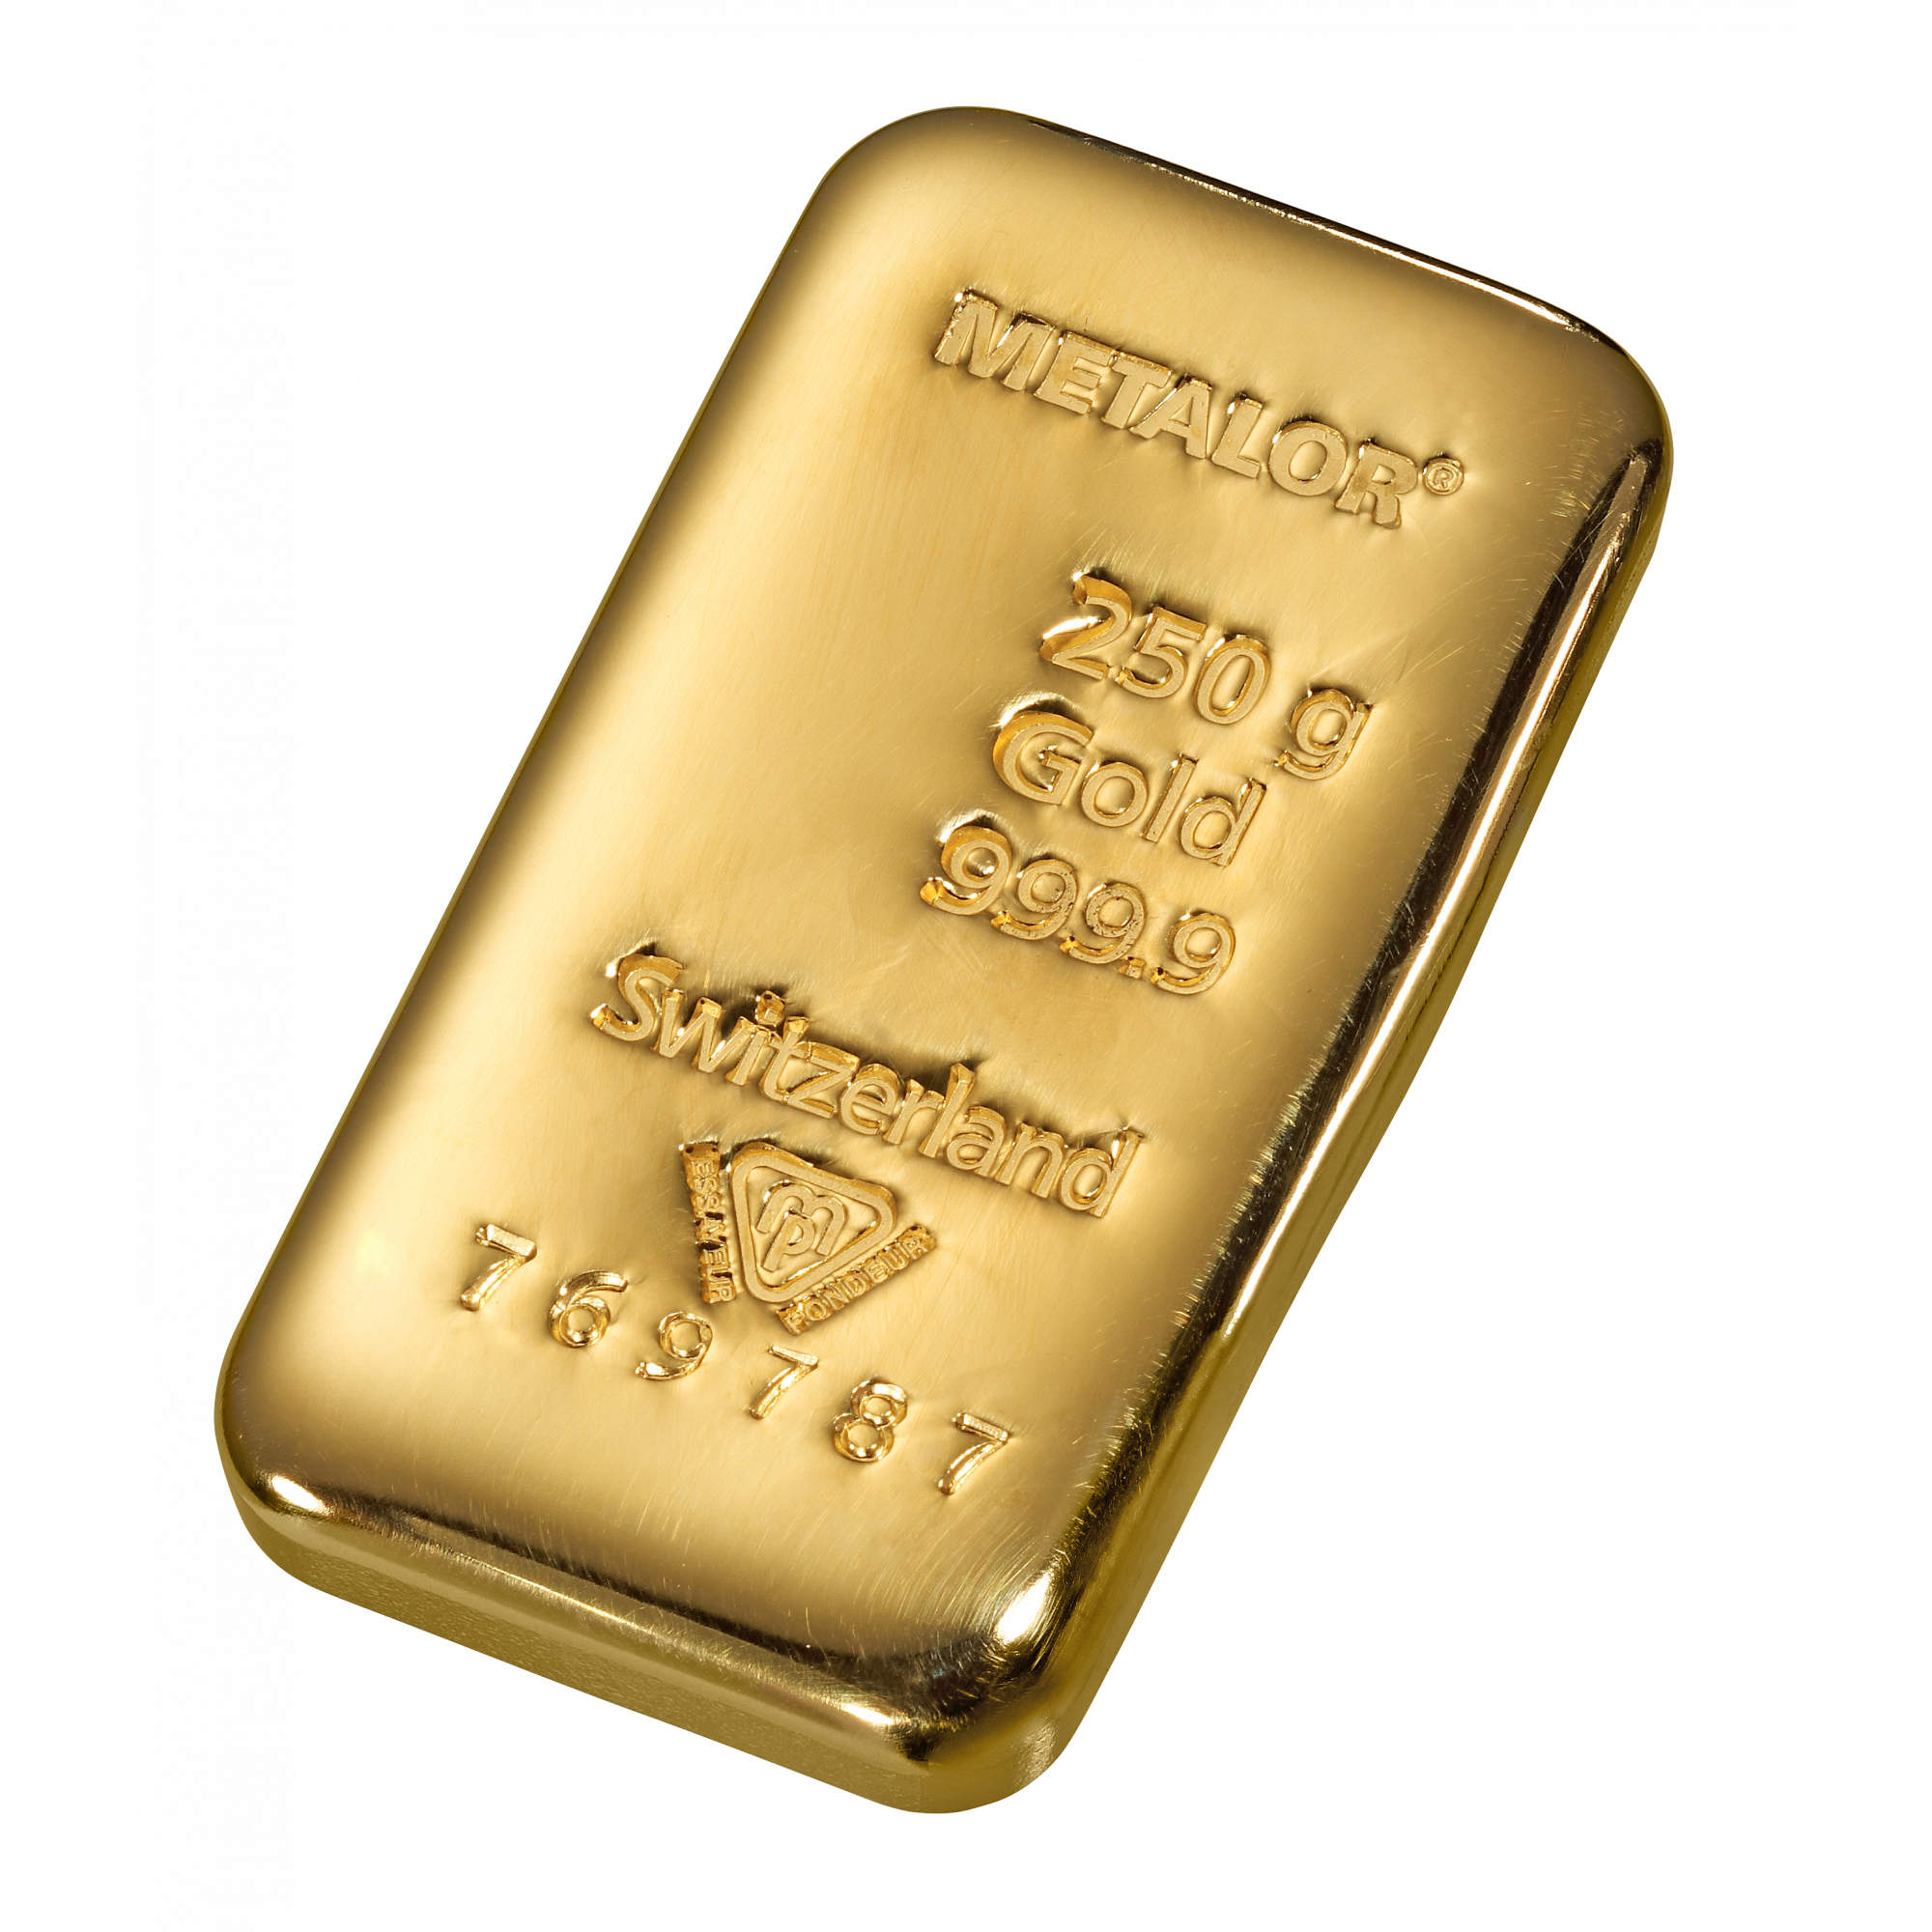 binnen Betrokken halen 250 gr. goudbaar - Aankoop en verkoop goudprijs - beleggen in goud